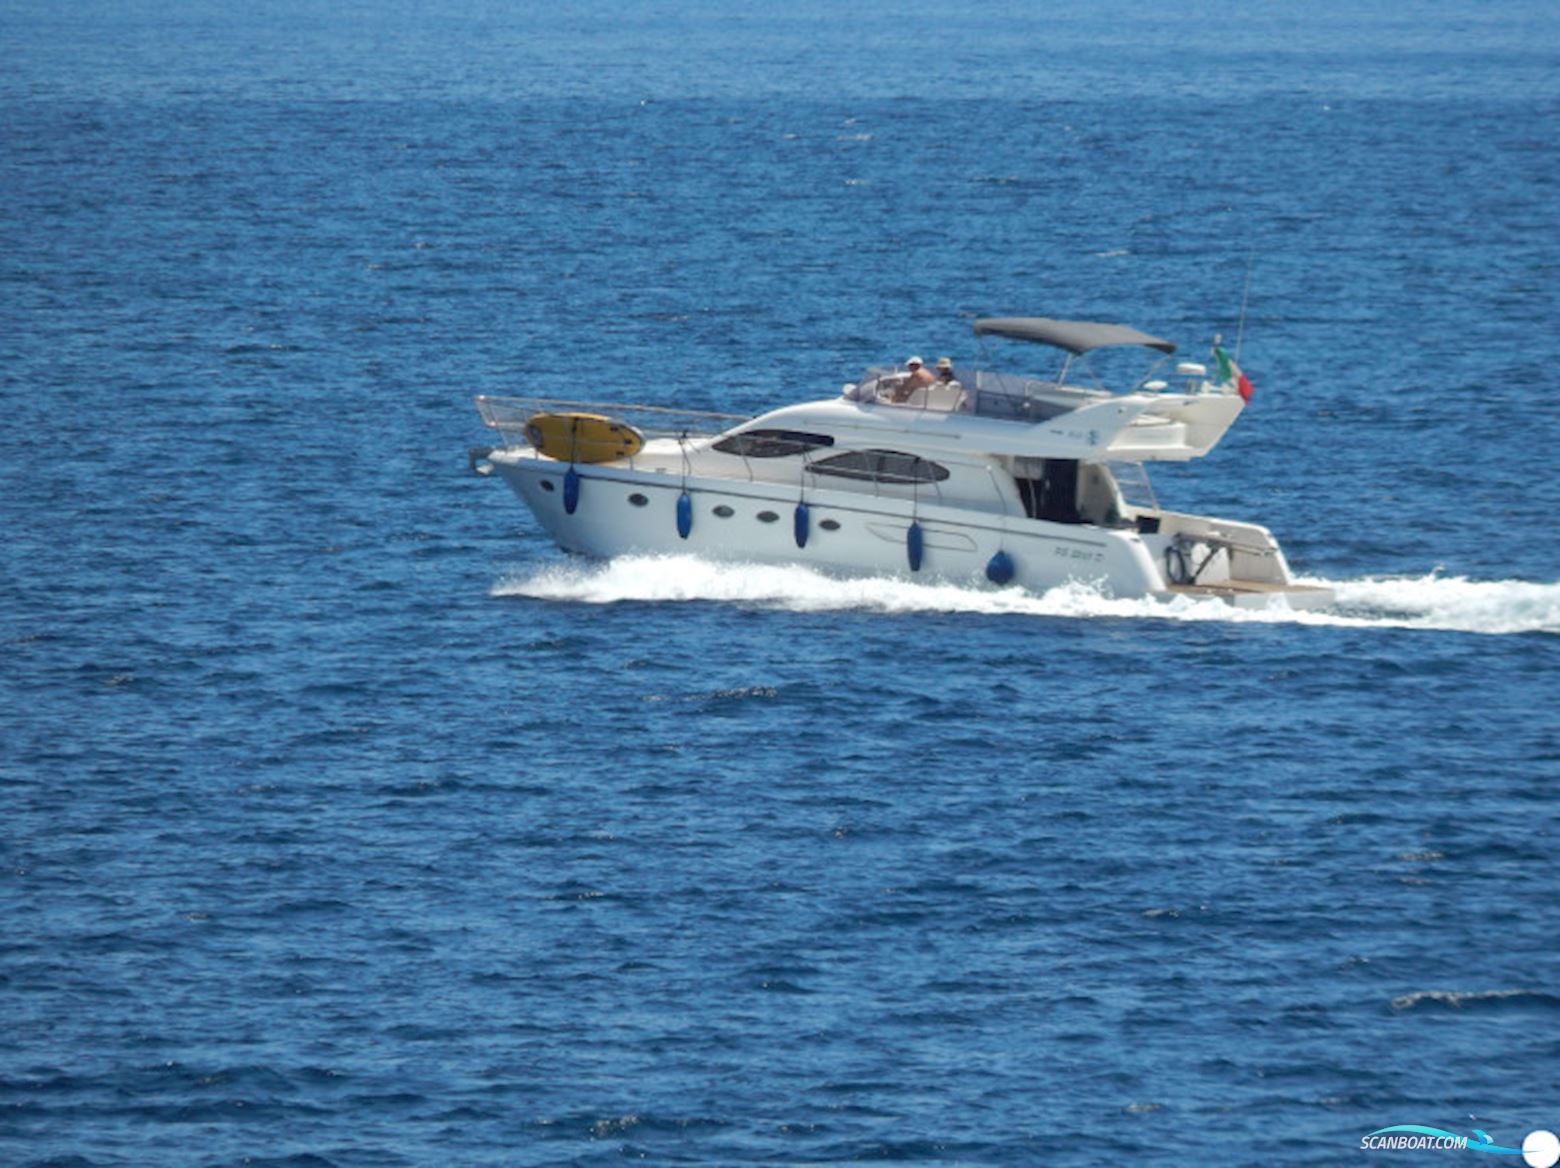 Carnevali 160 Fly Motorbåt 2006, med Caterpillar C 12 Dita motor, Italien